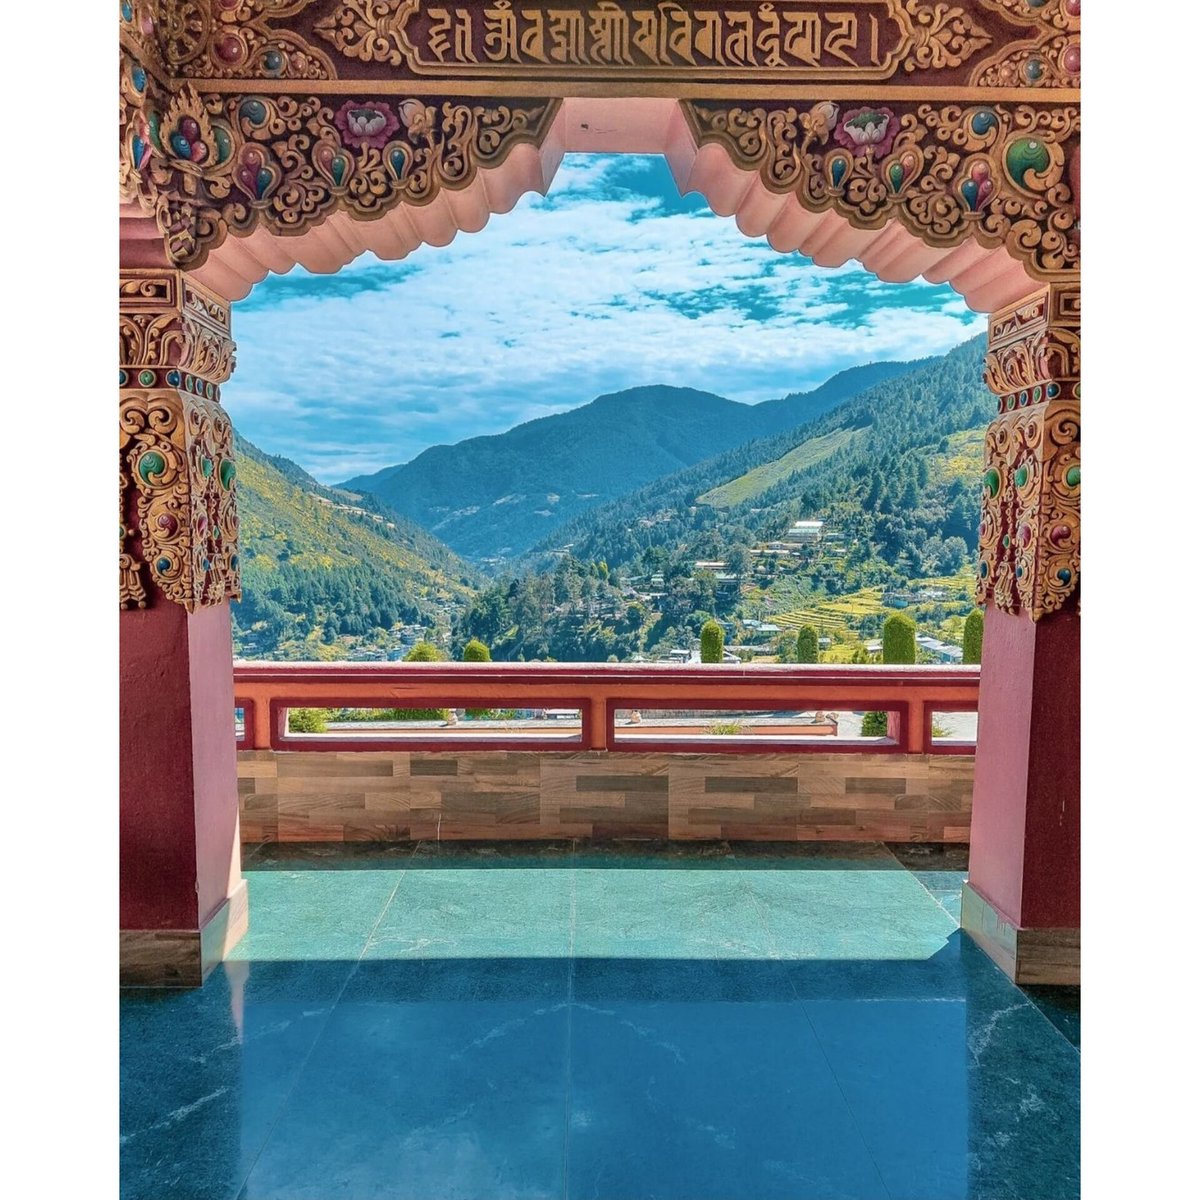 #Photogram | Bask in the glory of scenic beauty in #ArunachalPradesh ✨💫🍃

📍 Arunachal Pradesh 

#triptoarunachal #arunachaldiaries #traveldiaries #travelstories #storiesofindia #neindia #incredibleindia #northeastindia

📸 Instagram @shutter_unexplored